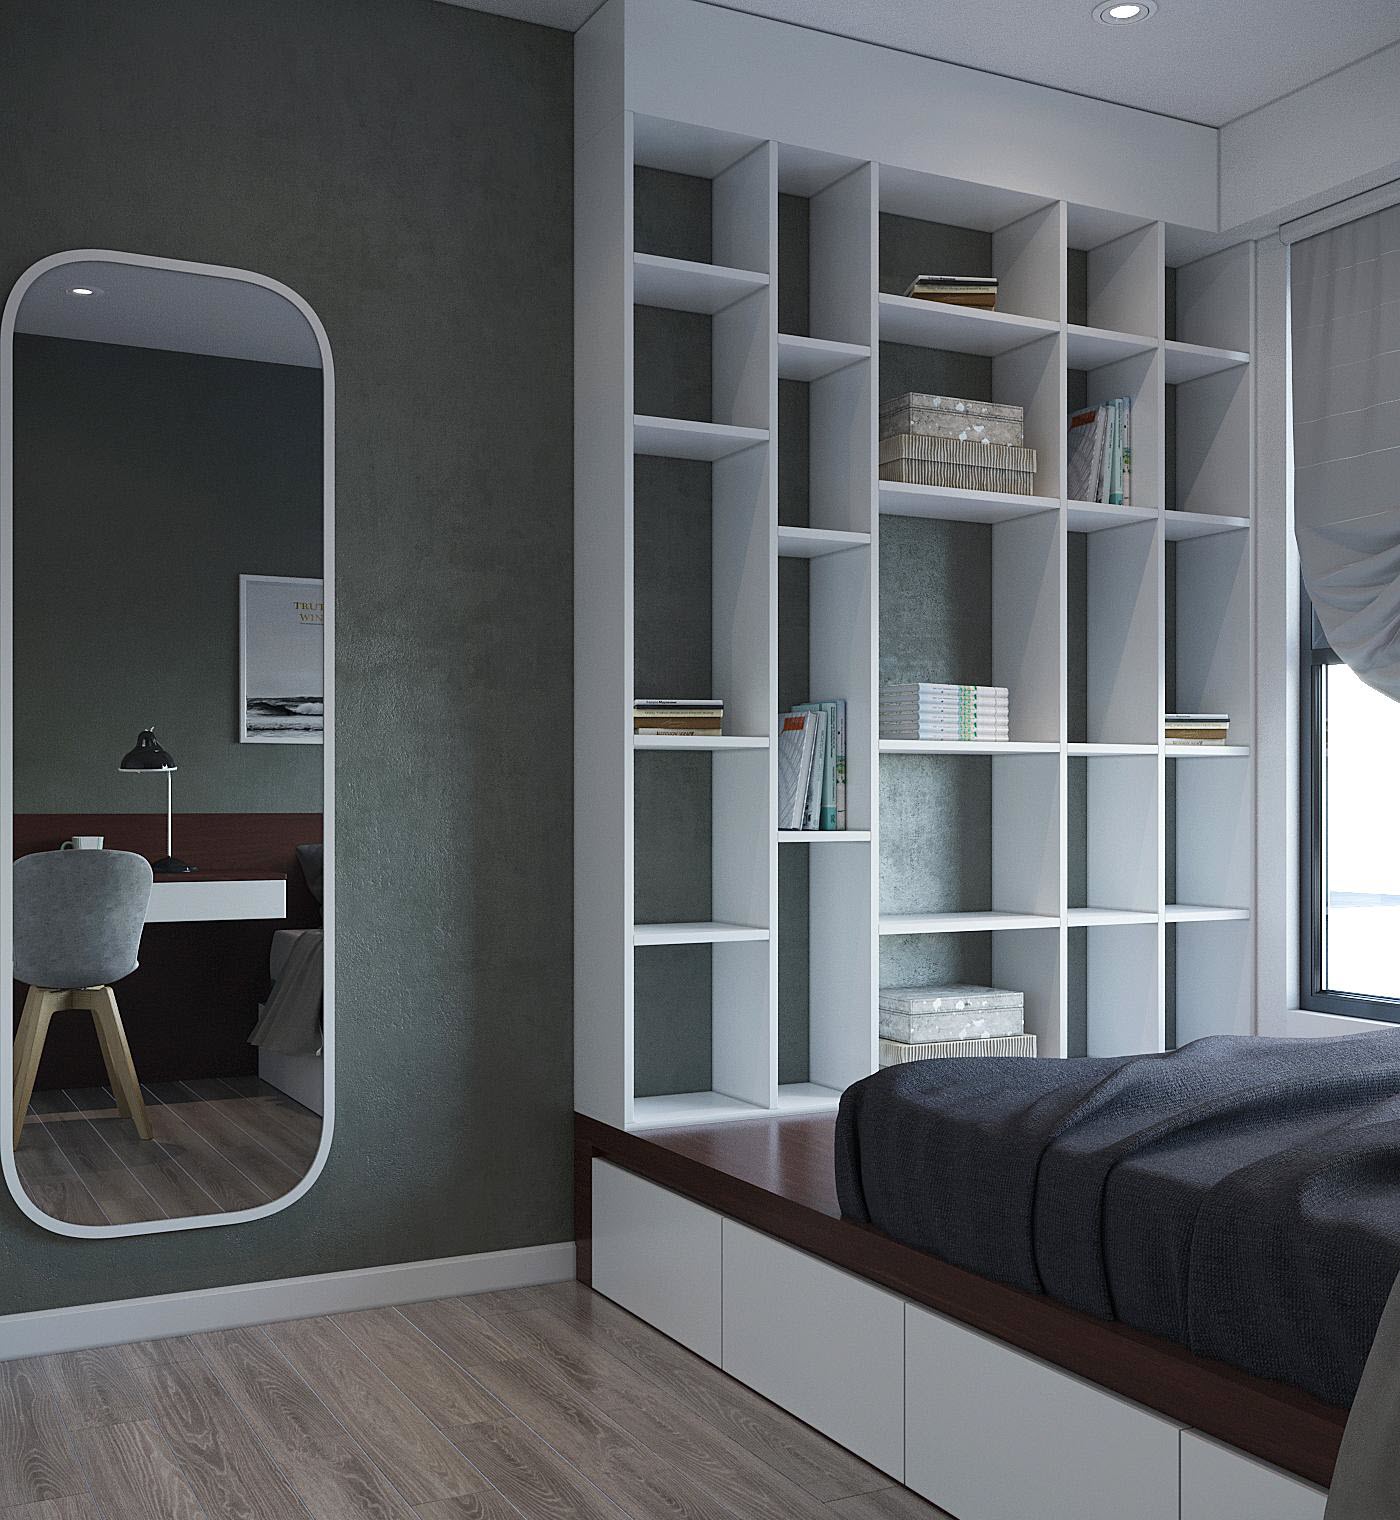 Khung gương lớn và hệ kệ cuối giường tạo điểm ấn tượng cho phòng ngủ này, bổ sung thêm các tiện ích khác.